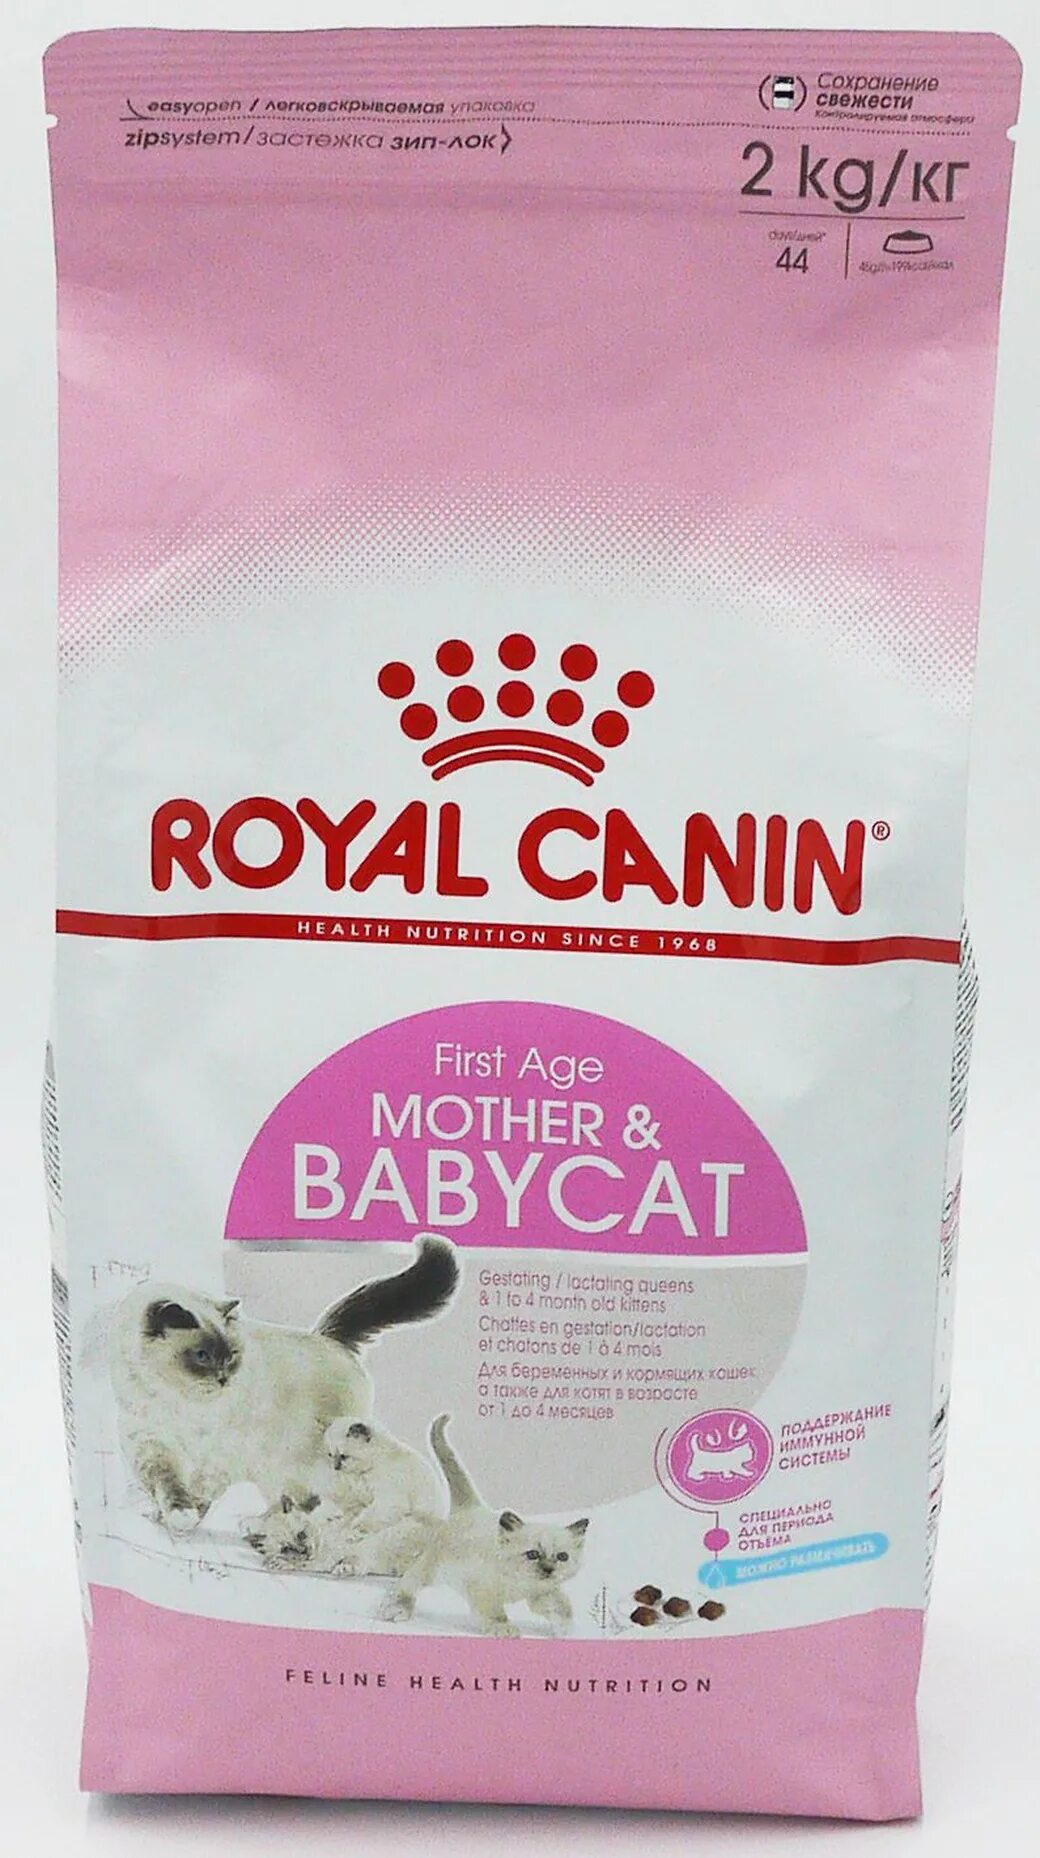 Royal canin 1 кг. Корм Роял Канин для кошек бэби Кэт. Роял Канин Мазер энд Бэбикет 0,4 + 0,4 кг.. Корм для котят Роял Канин бэби Кэт. Роял Канин для котят 2 кг.